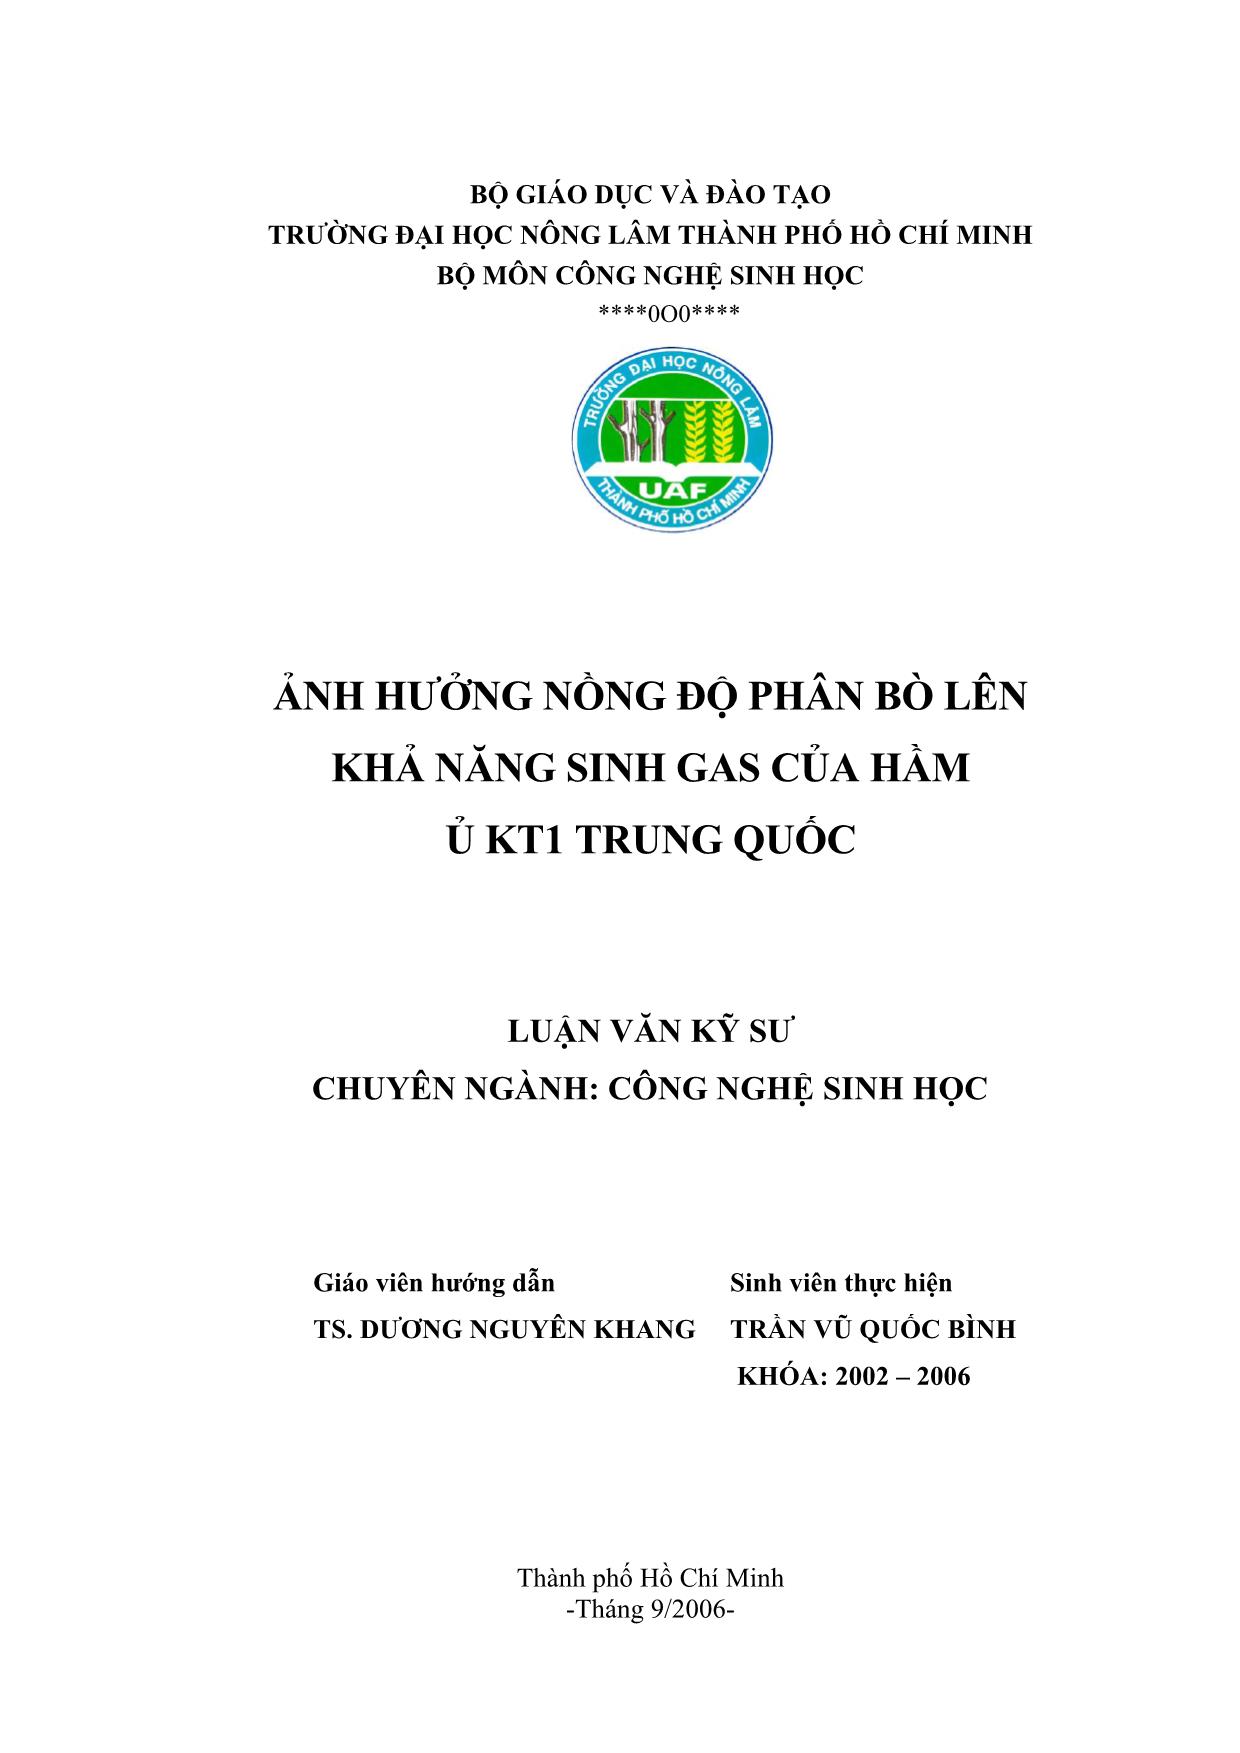 Luận văn Ảnh hưởng nồng độ phân bõ lên khả năng sinh gas của hầm ủ kt1 Trung Quốc trang 2